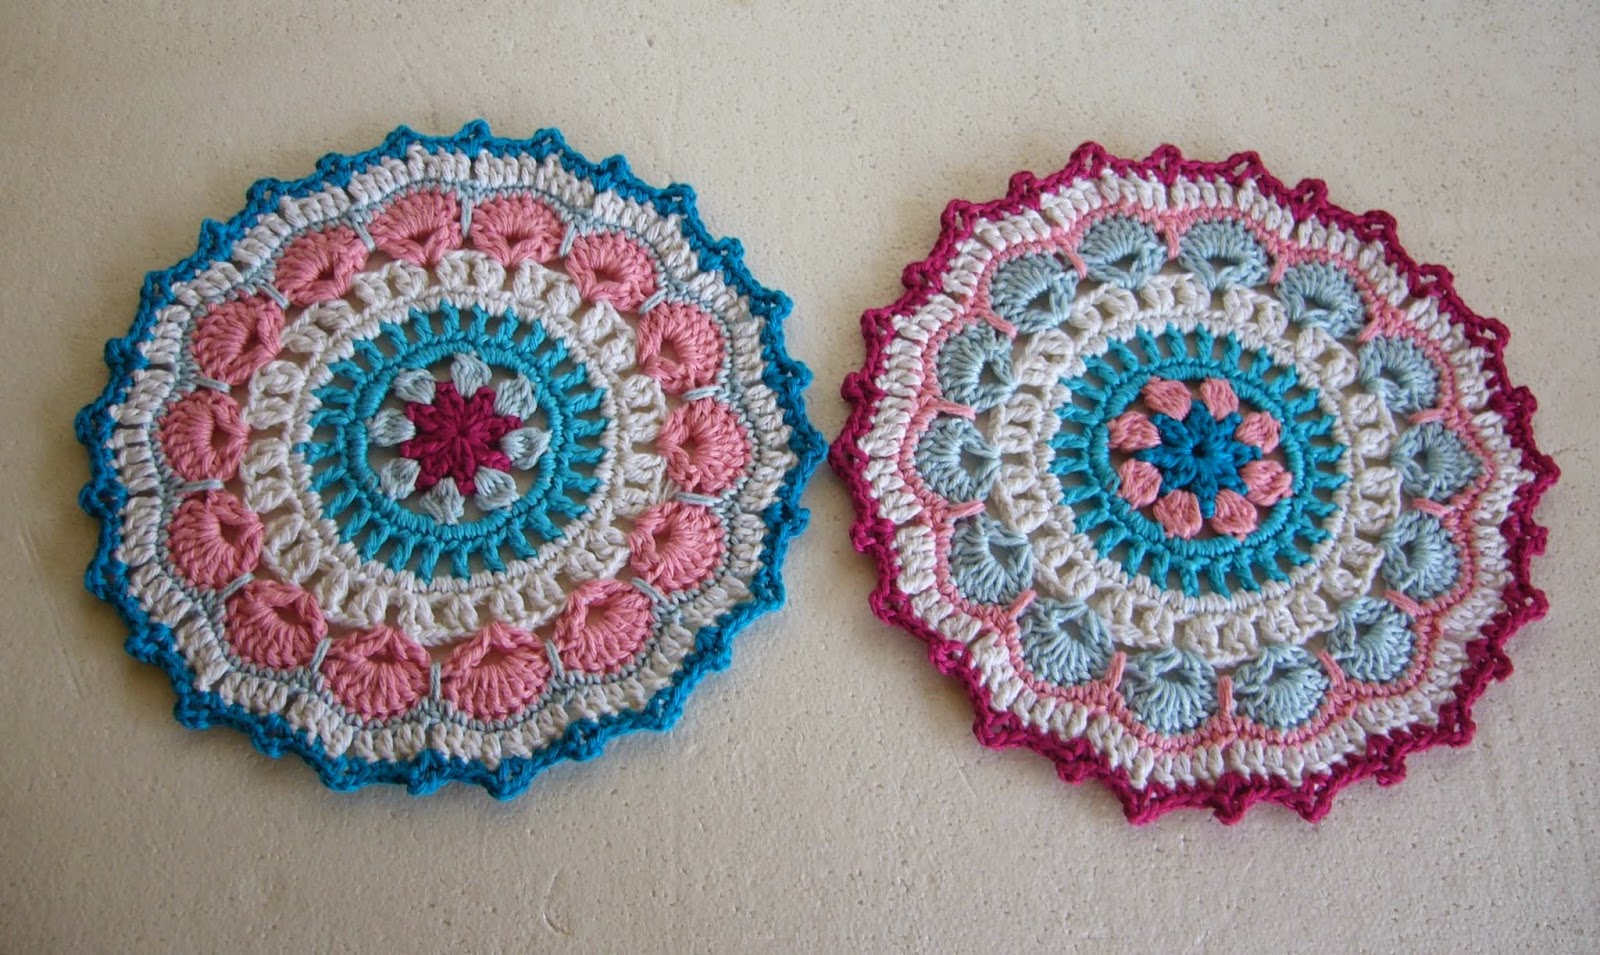 Twin crochet mandalas